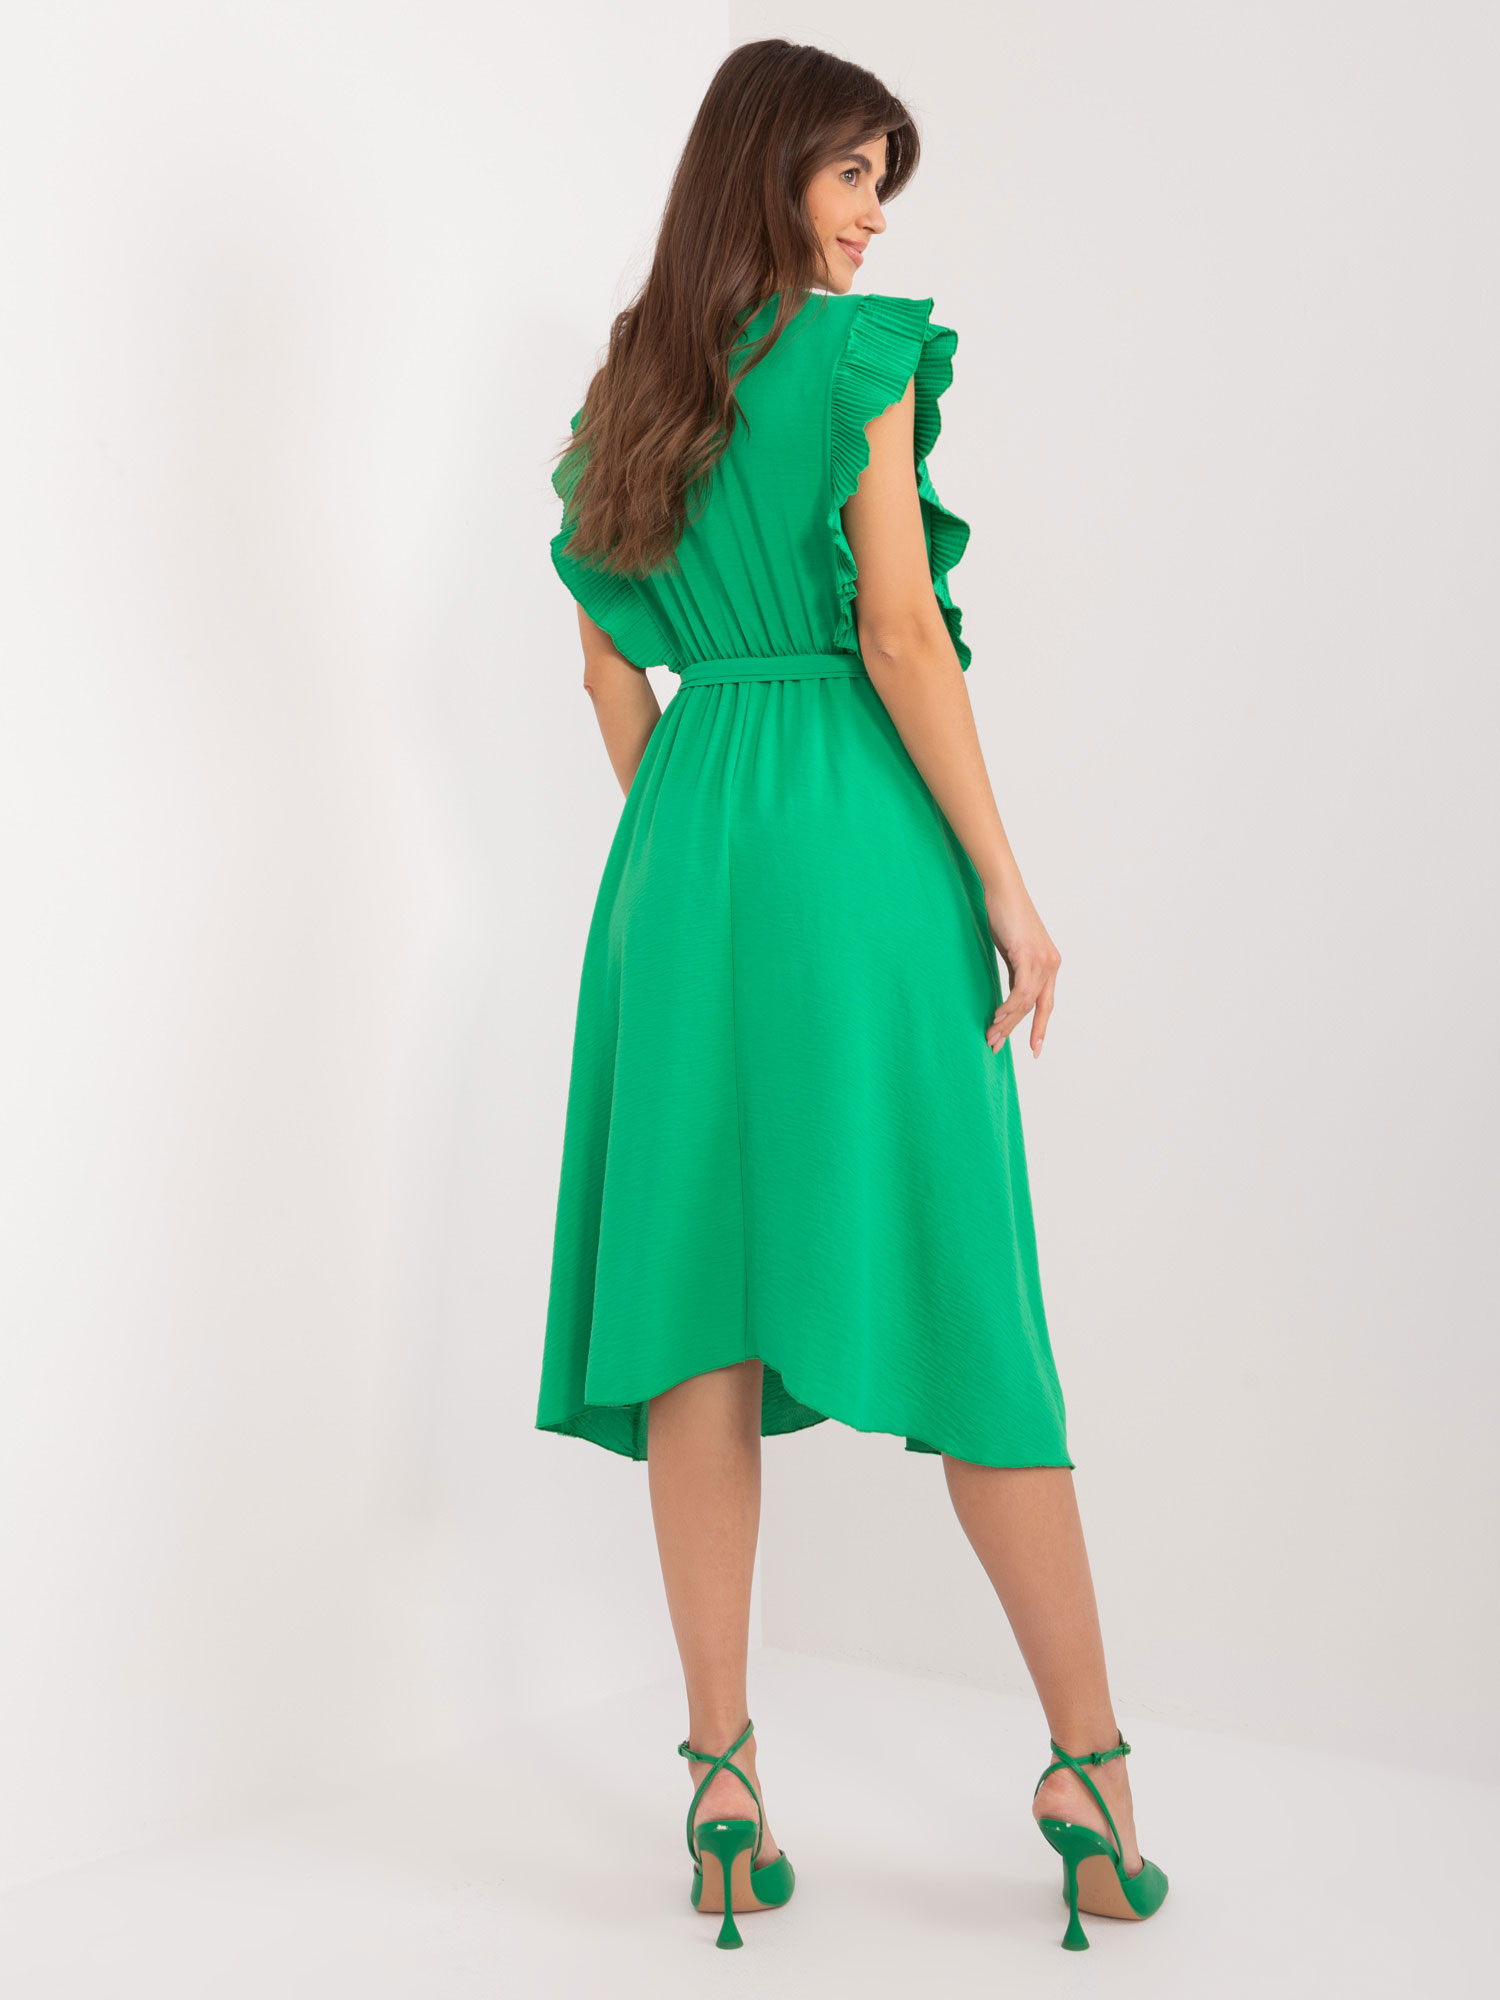 Green midi dress with clutch neckline